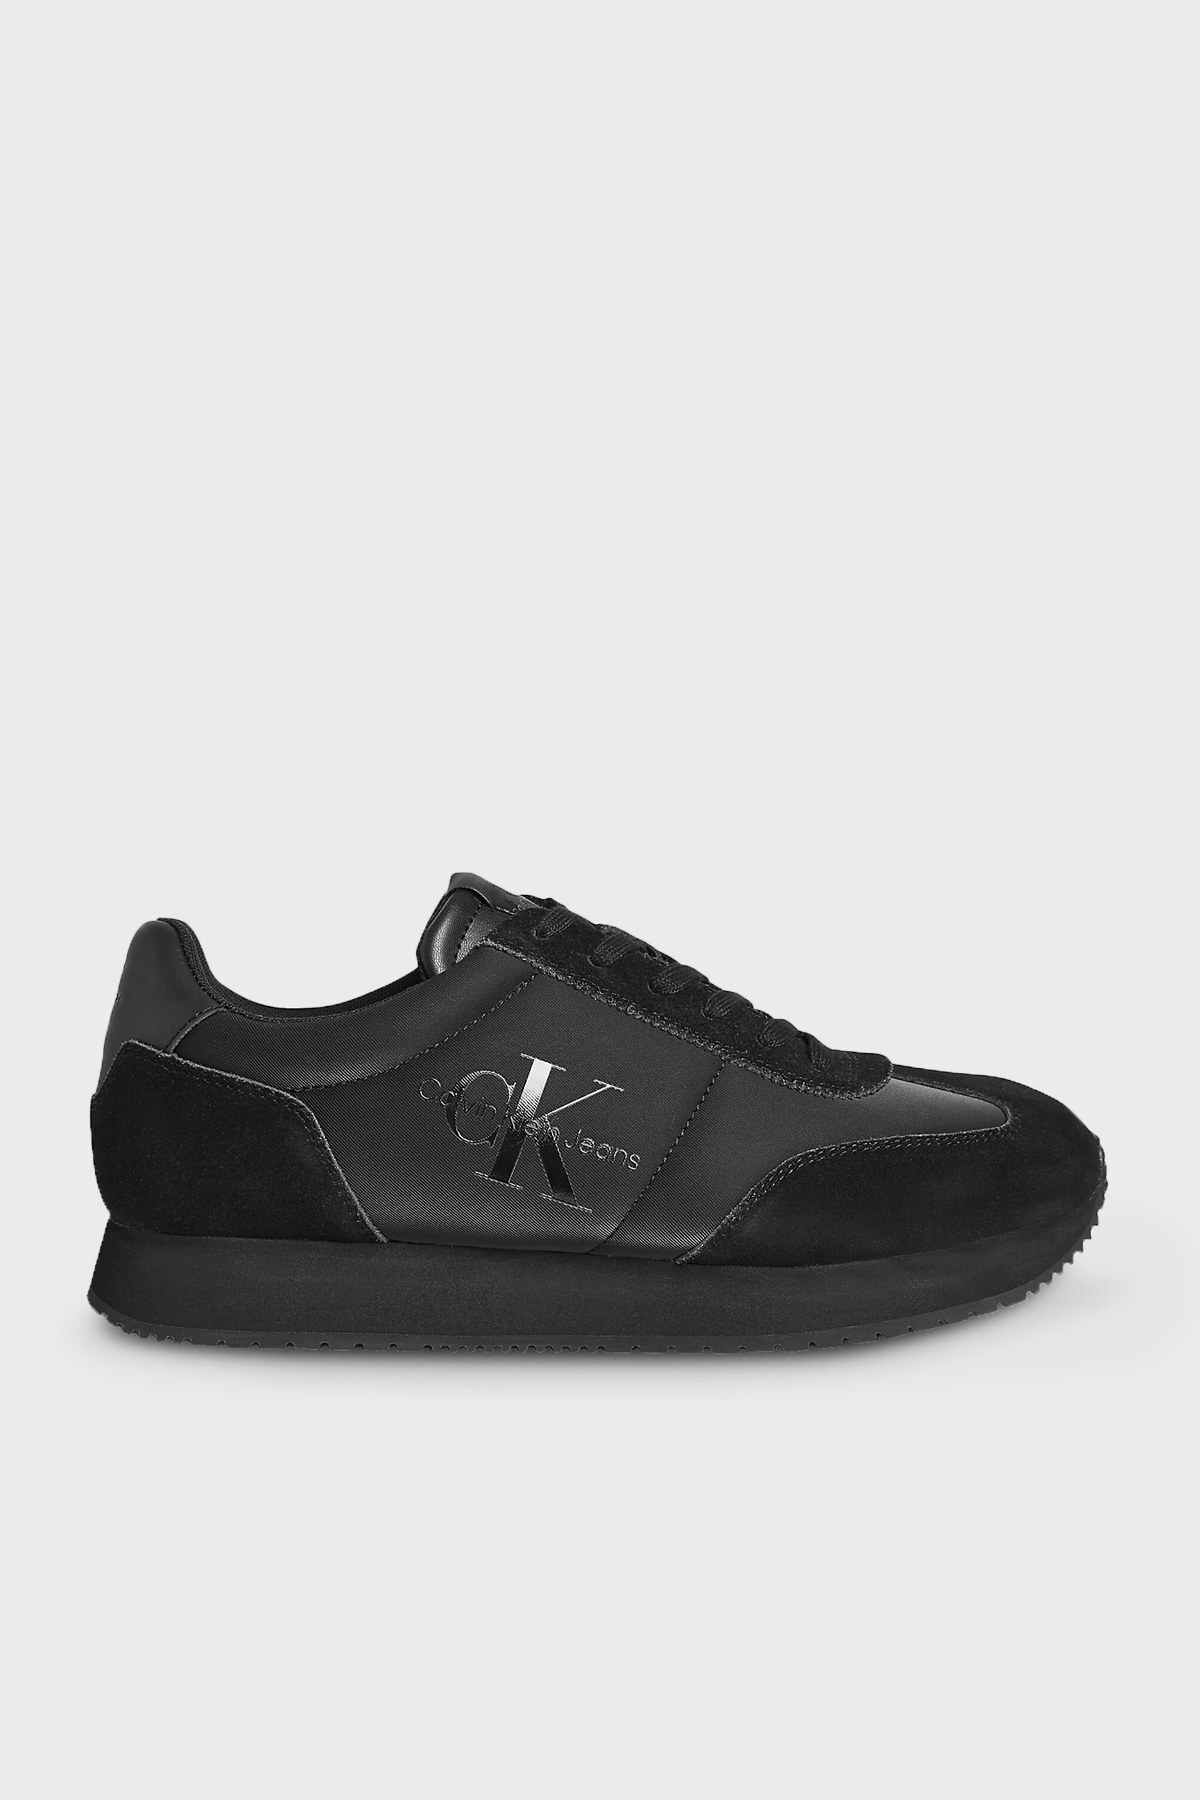 Calvin Klein Logolu Hakiki Deri Sneaker Erkek Ayakkabı YM0YM00385 0GL SİYAH